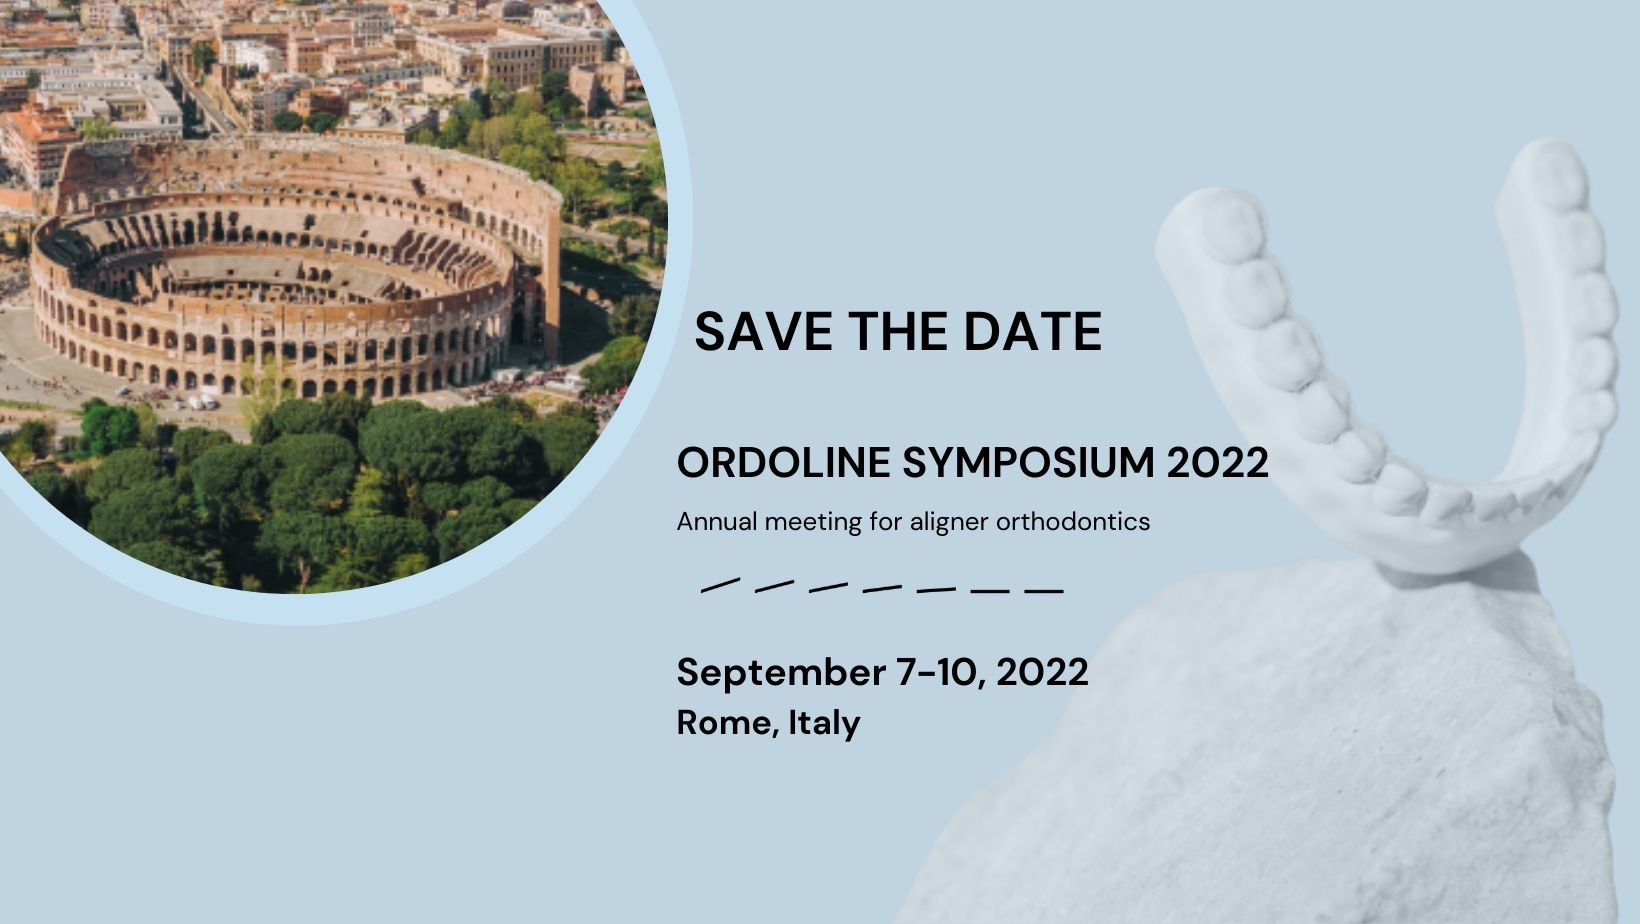 Save the date Ordoline symposium